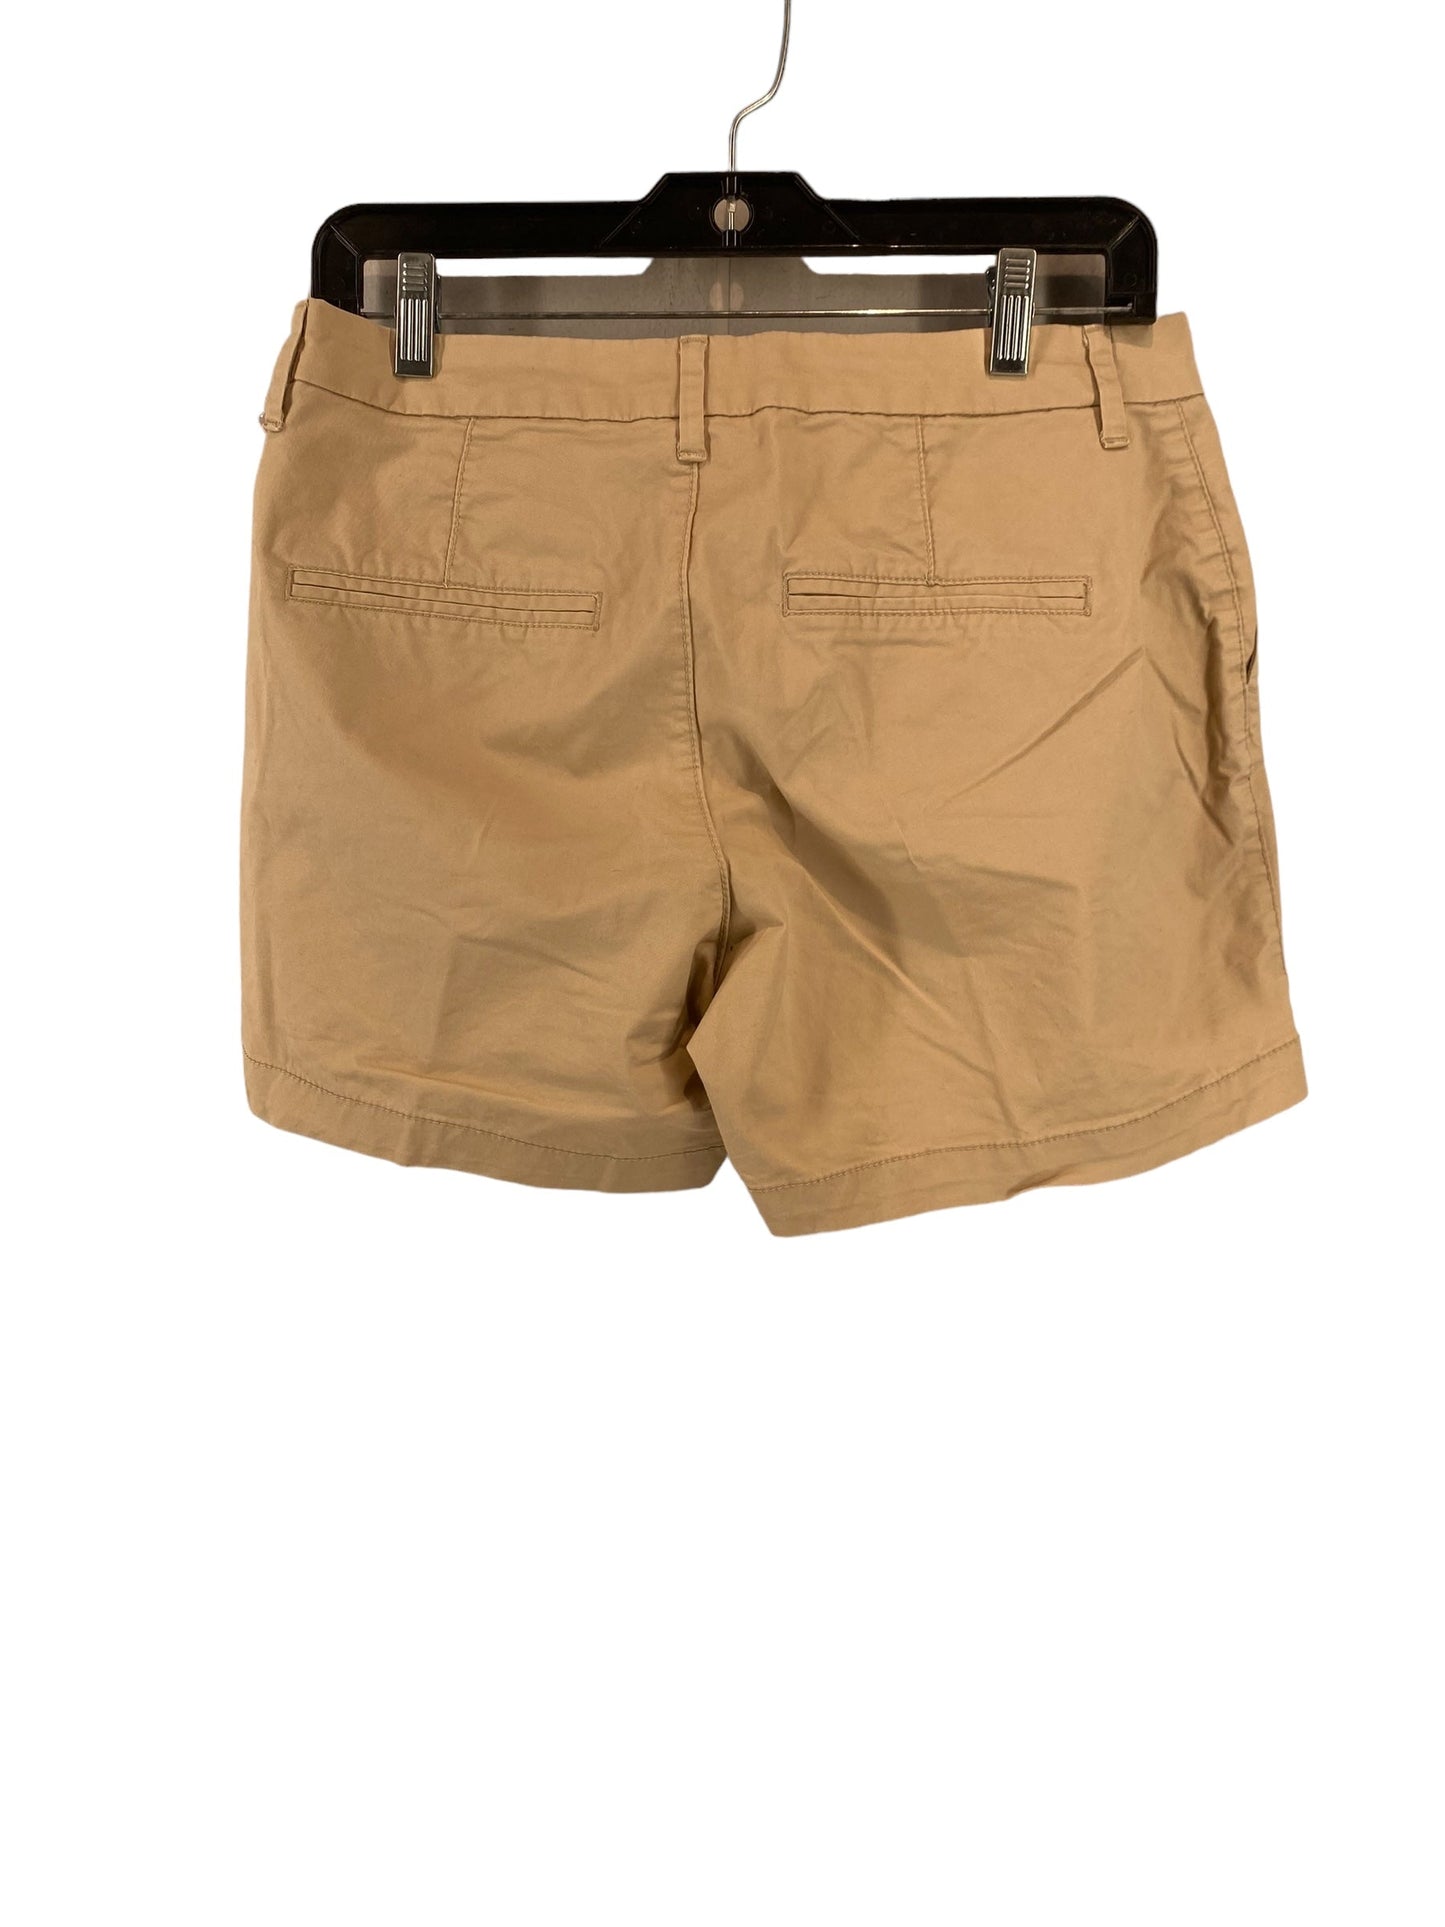 Tan Shorts Old Navy, Size 4